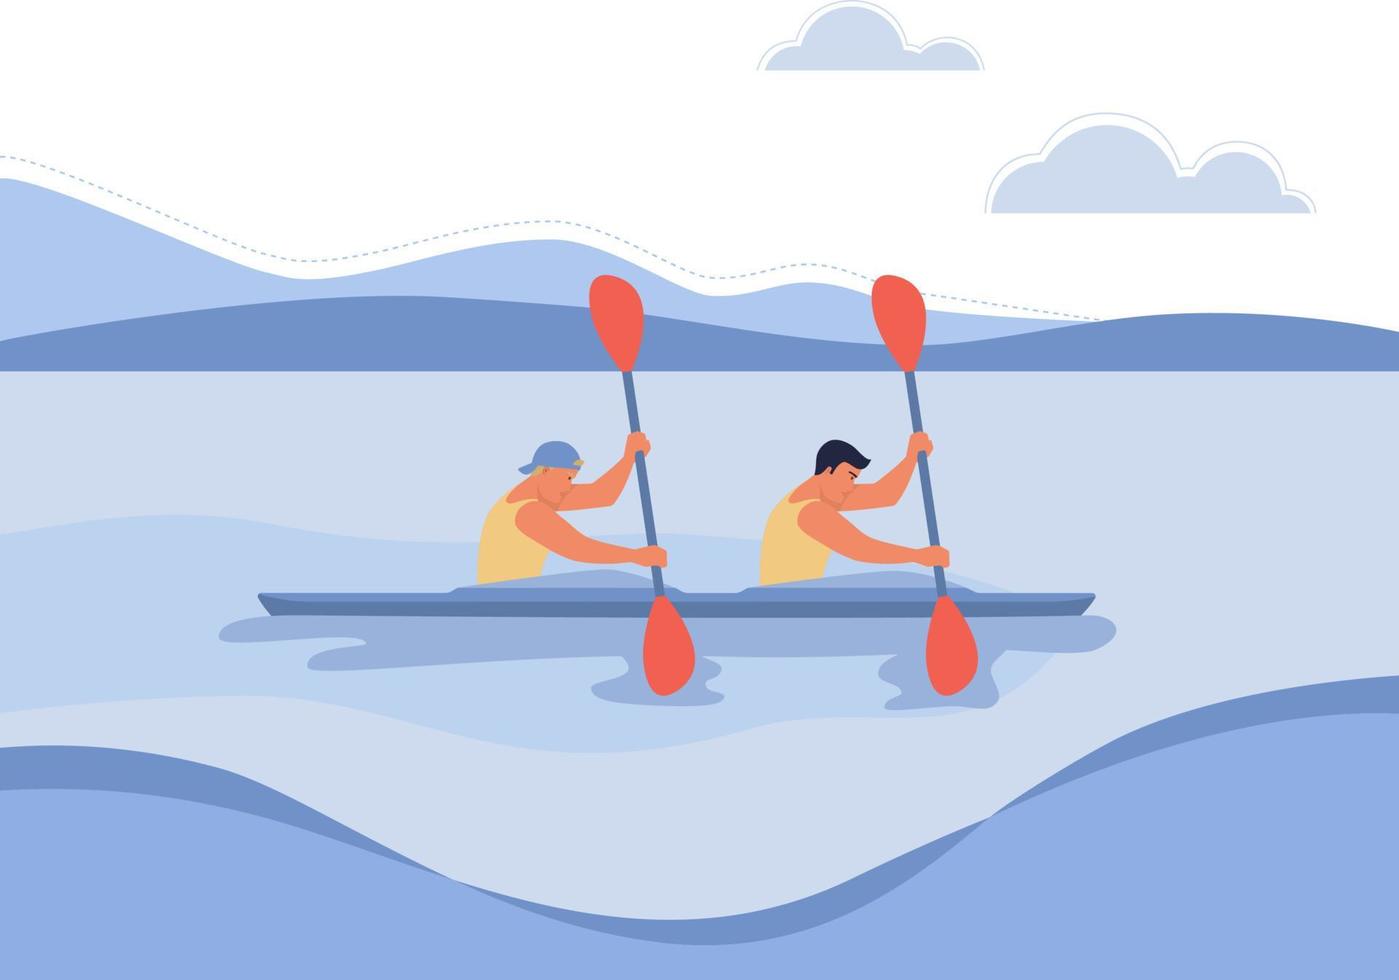 två grabbar i en båt är flytande på de flod, de begrepp av rodd tävlingar, paddla kanot. vektor illustration i en platt stil.